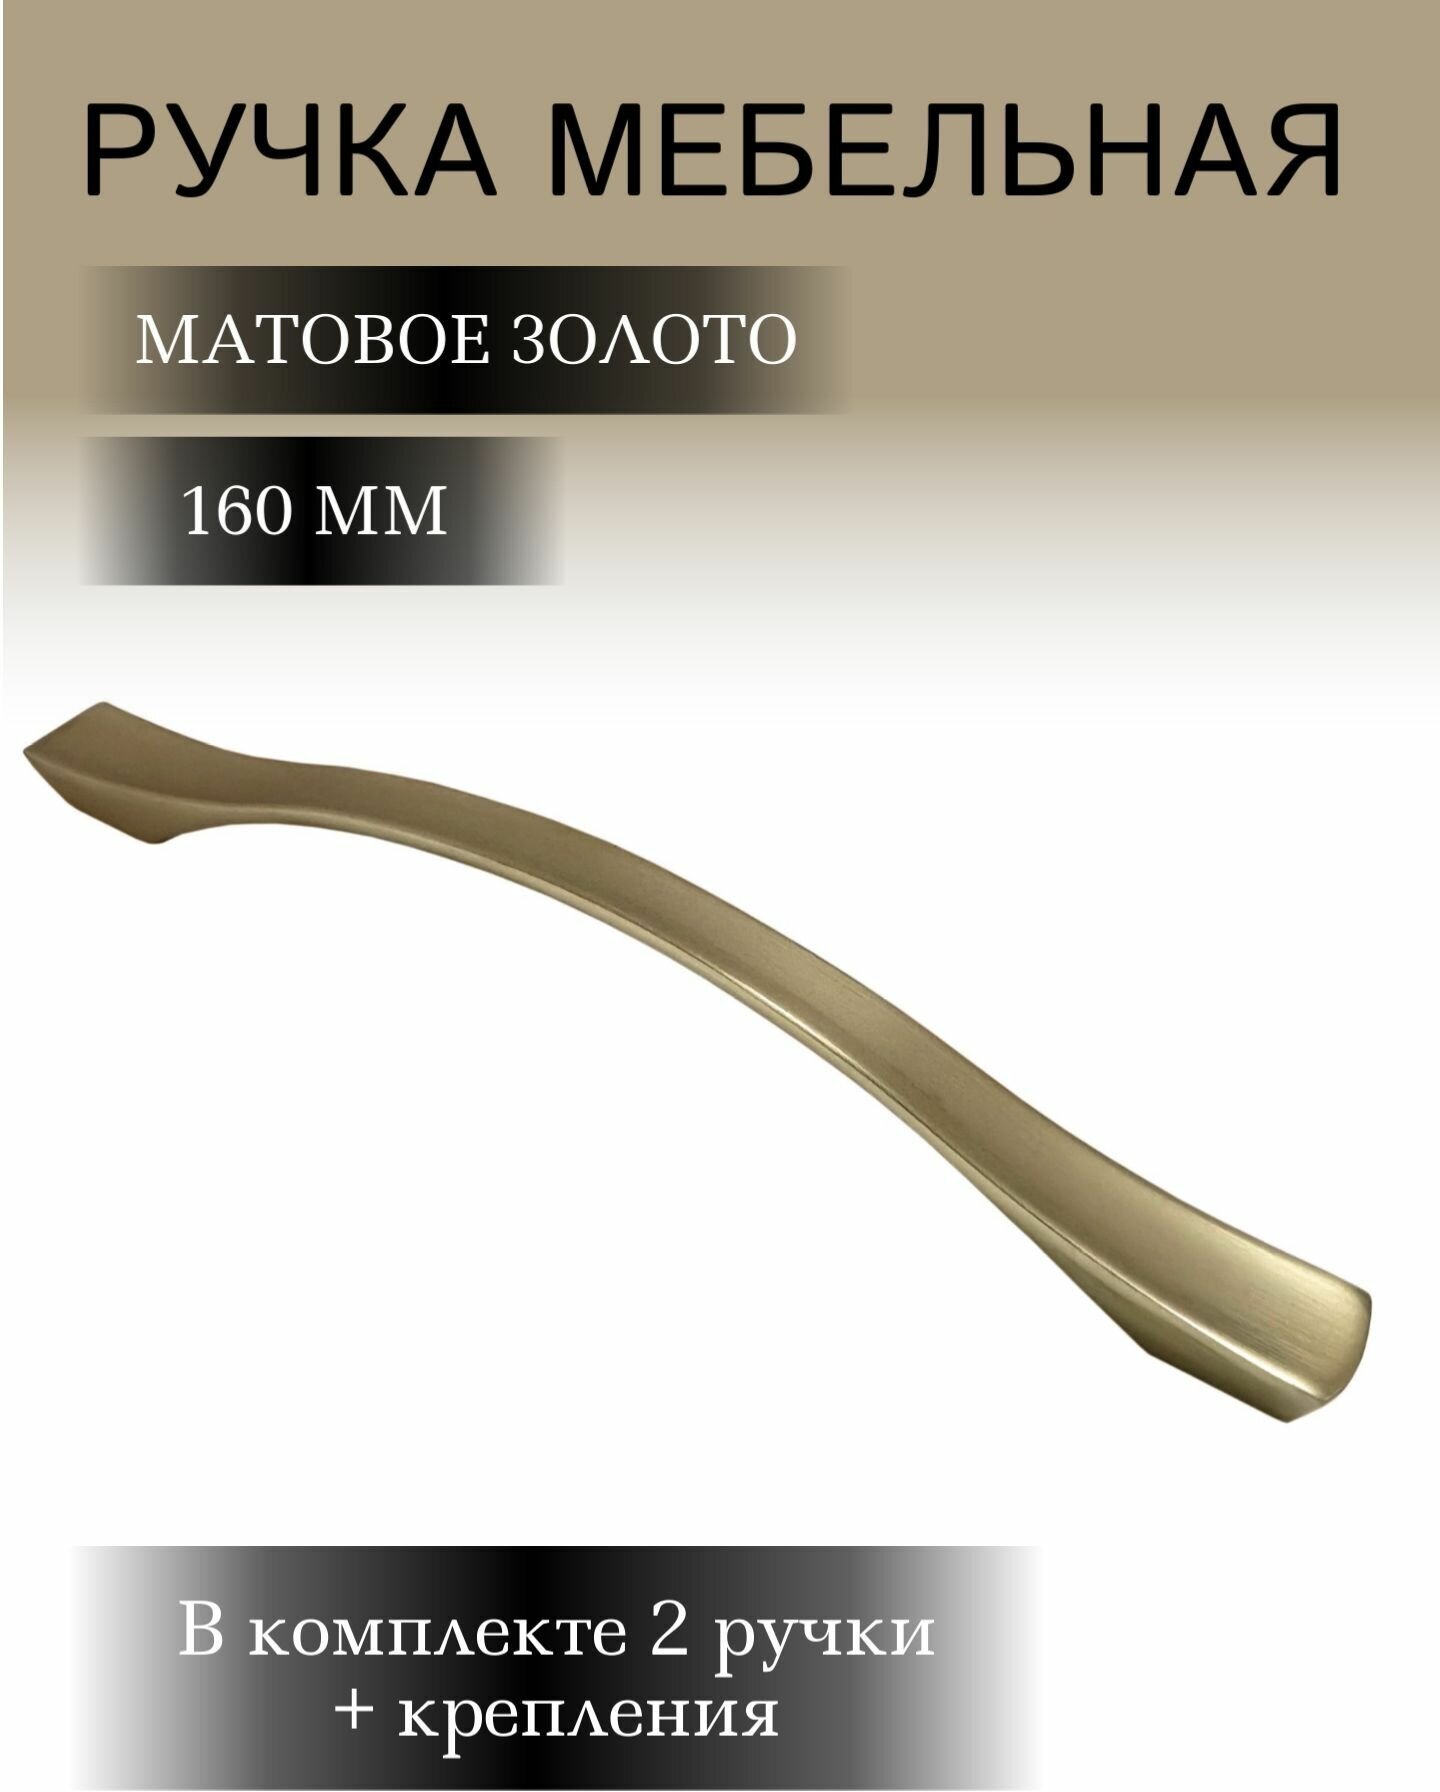 Ручка мебельная "Делайла", матовое золото, L-160mm